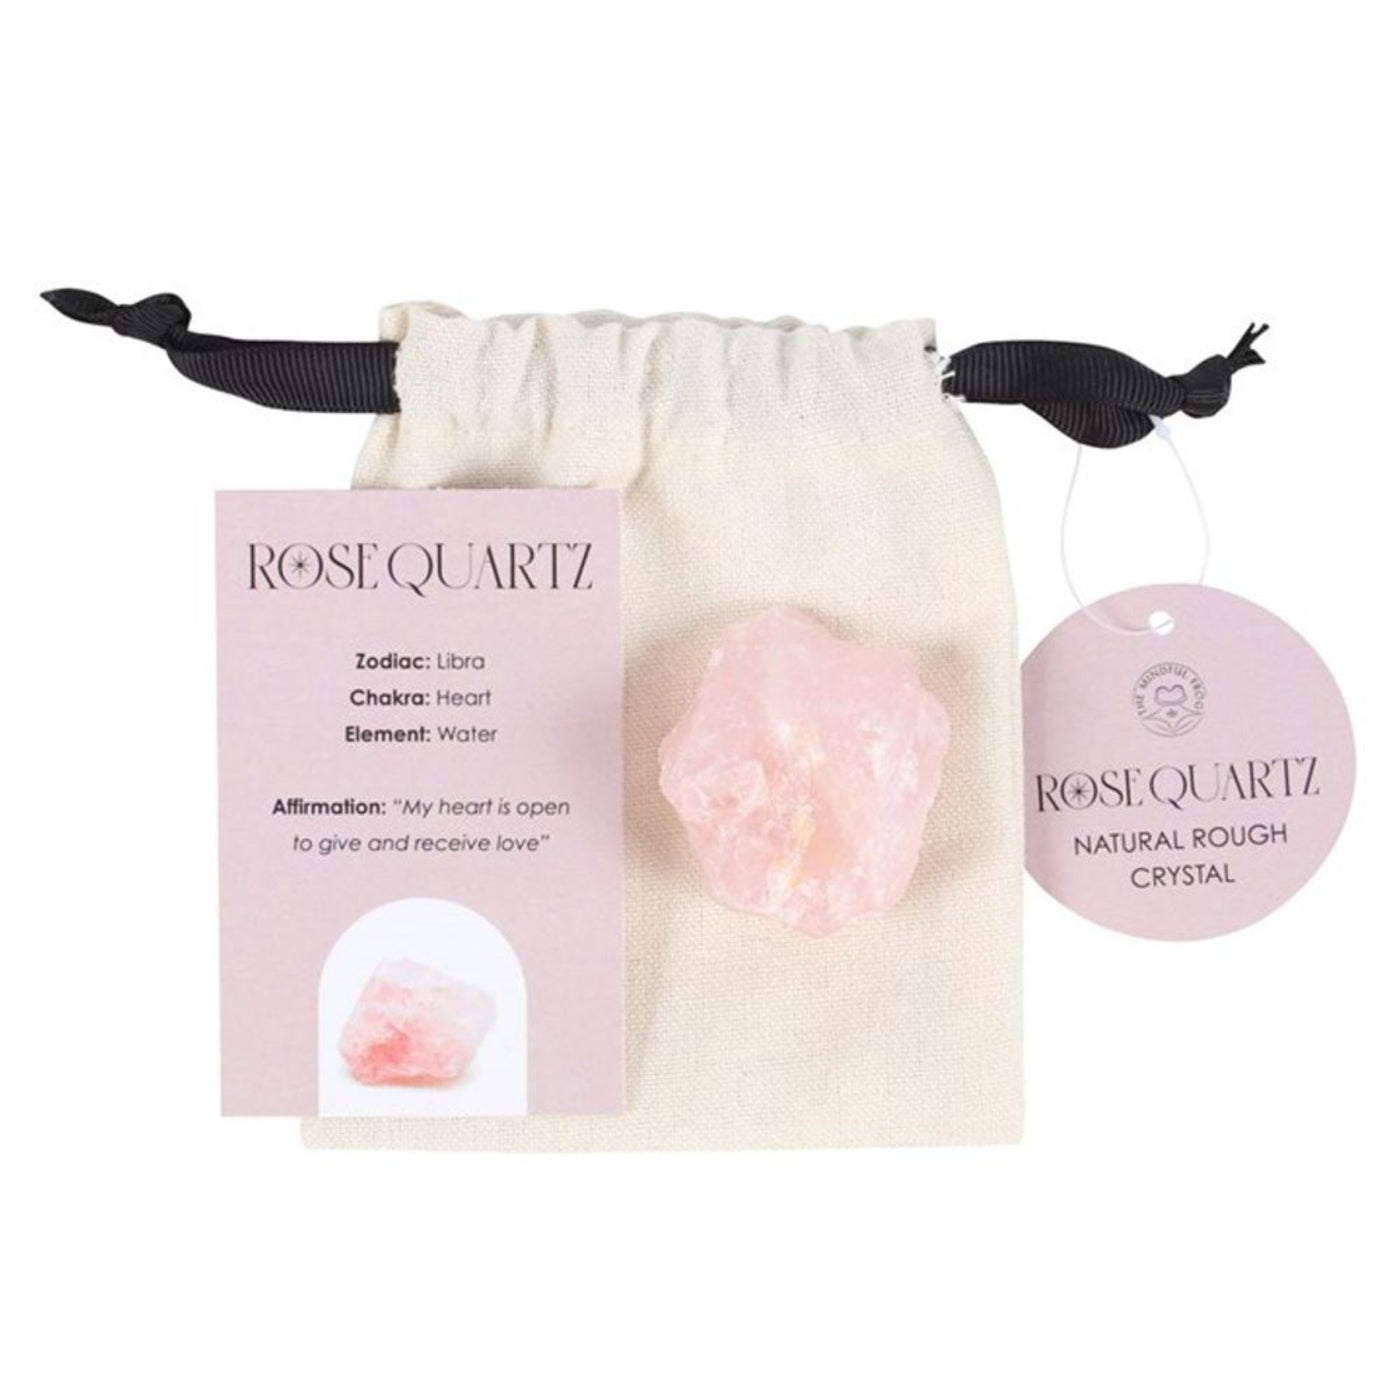 Rose Quartz Healing Rough Natural Pink Gemstone With Storage Bag.